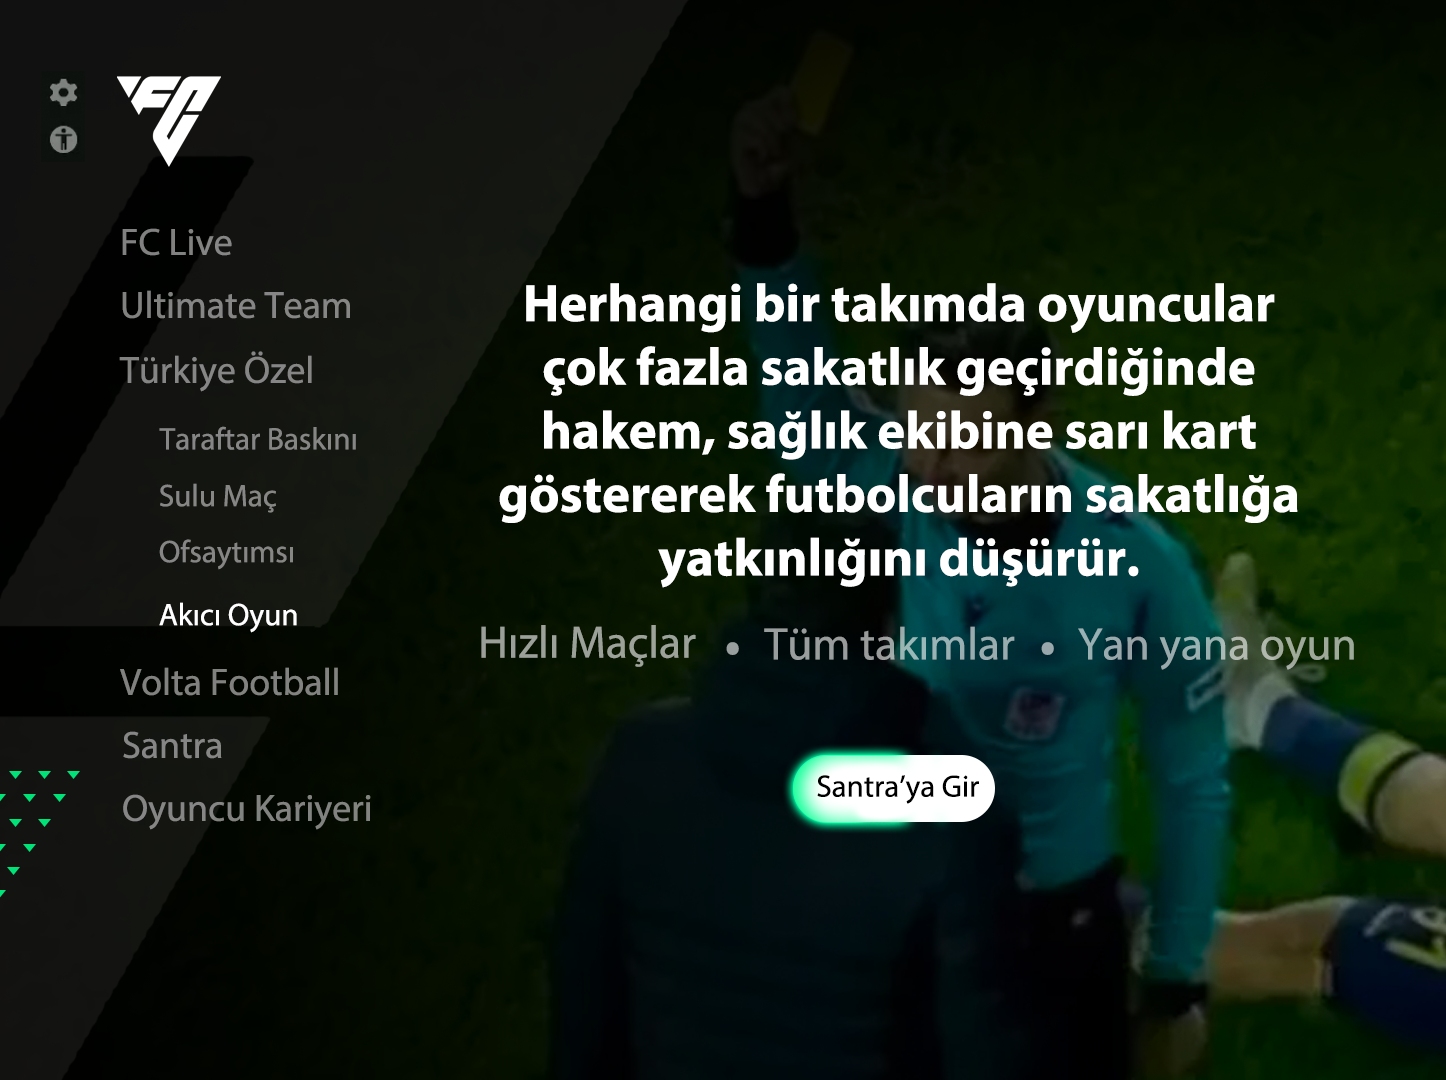 Meral Erden: Böyle Lige Böyle Oyun: Fc 24'Te Türk Futboluna Özel Modlar Ve Taktikler Olsa Nasıl Olurdu? 7